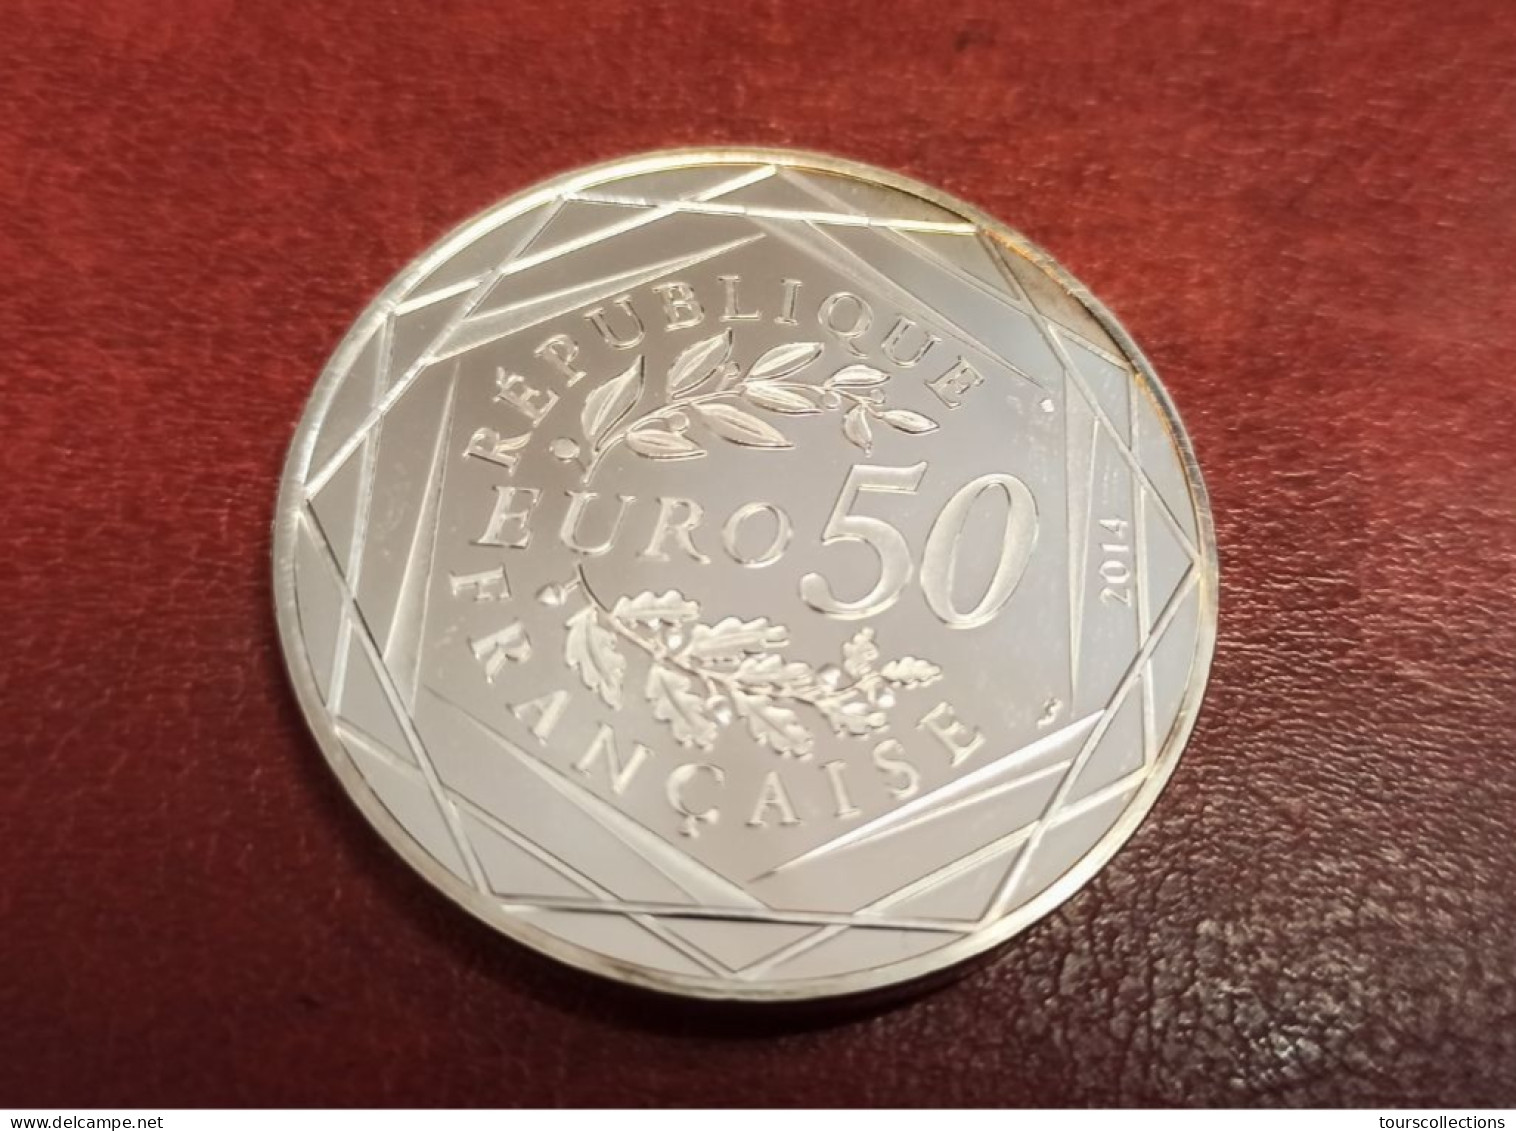 50 EUROS ARGENT FRANCE OISEAU PAIX Par Sempé - 41 Mm Pour 41 Grammes à 90% - MONNAIE DE PARIS 2014 Printemps / Eté - France